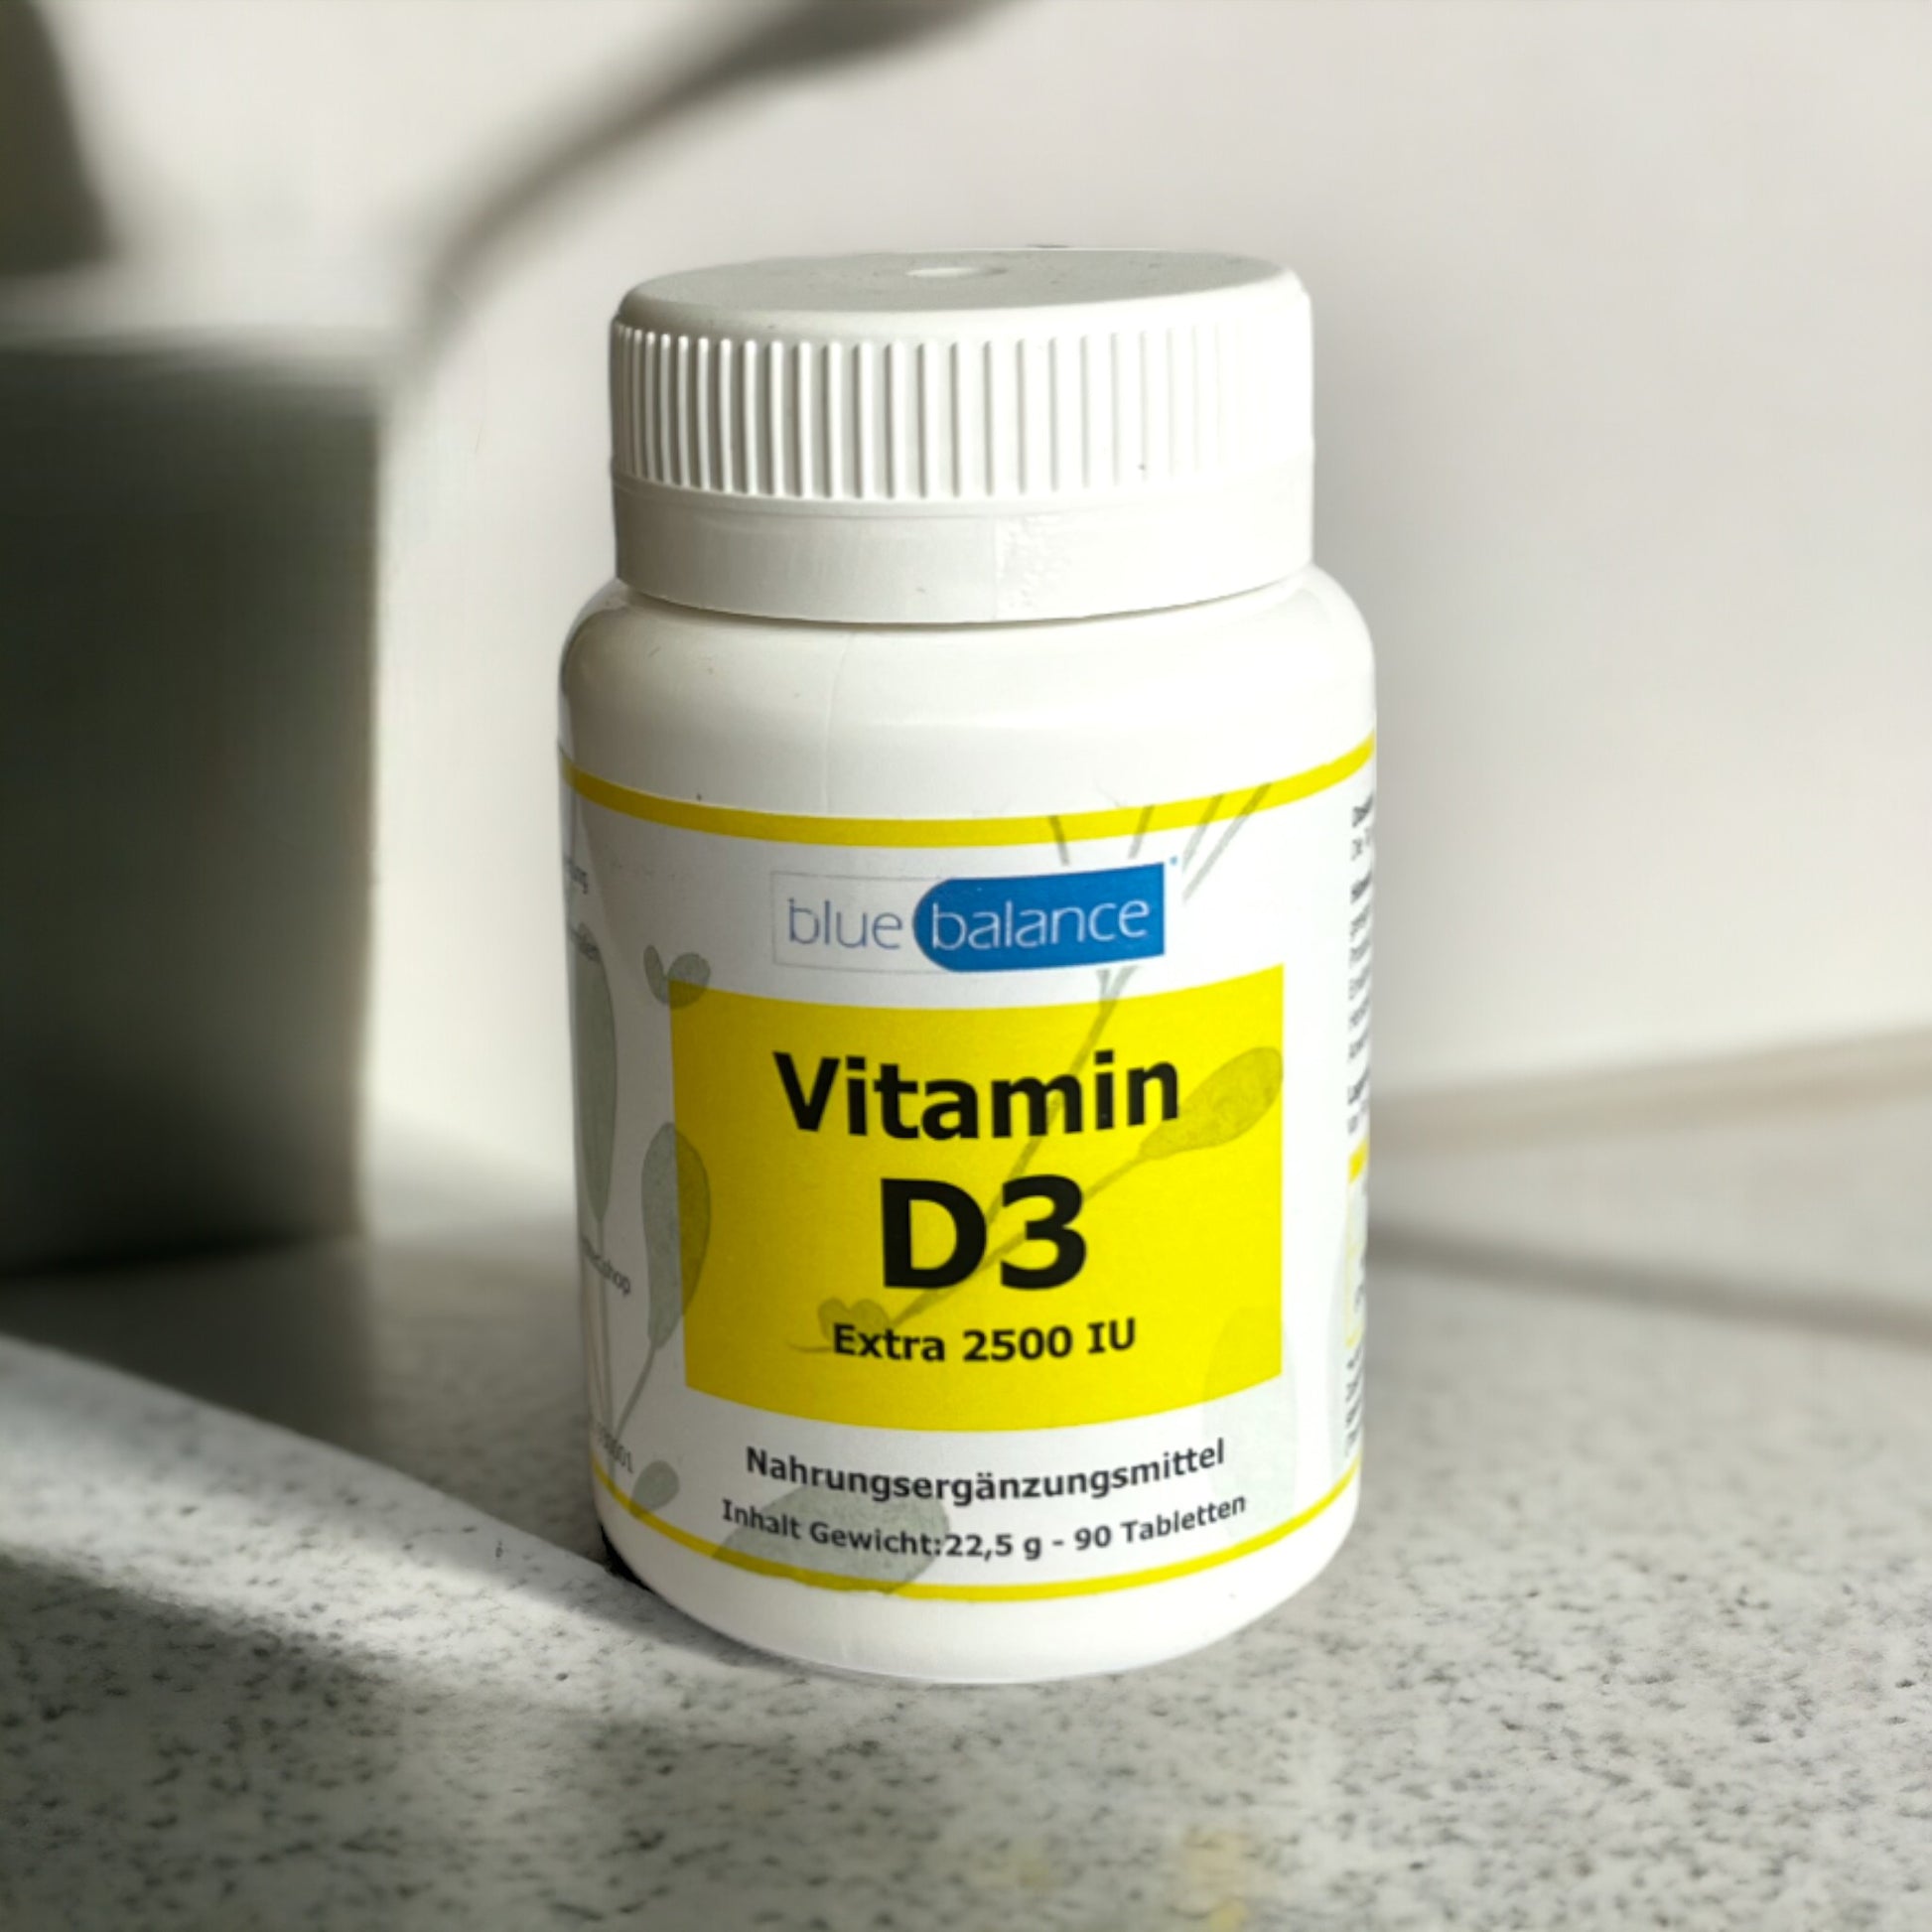 blue balance Vitamin D3 - Stärken Sie Ihr Immunsystem und erhalten Sie gesunde Knochen und Muskelfunktion. Holen Sie sich jetzt Ihre Kapseln für eine optimale Vitamin-D-Versorgung.